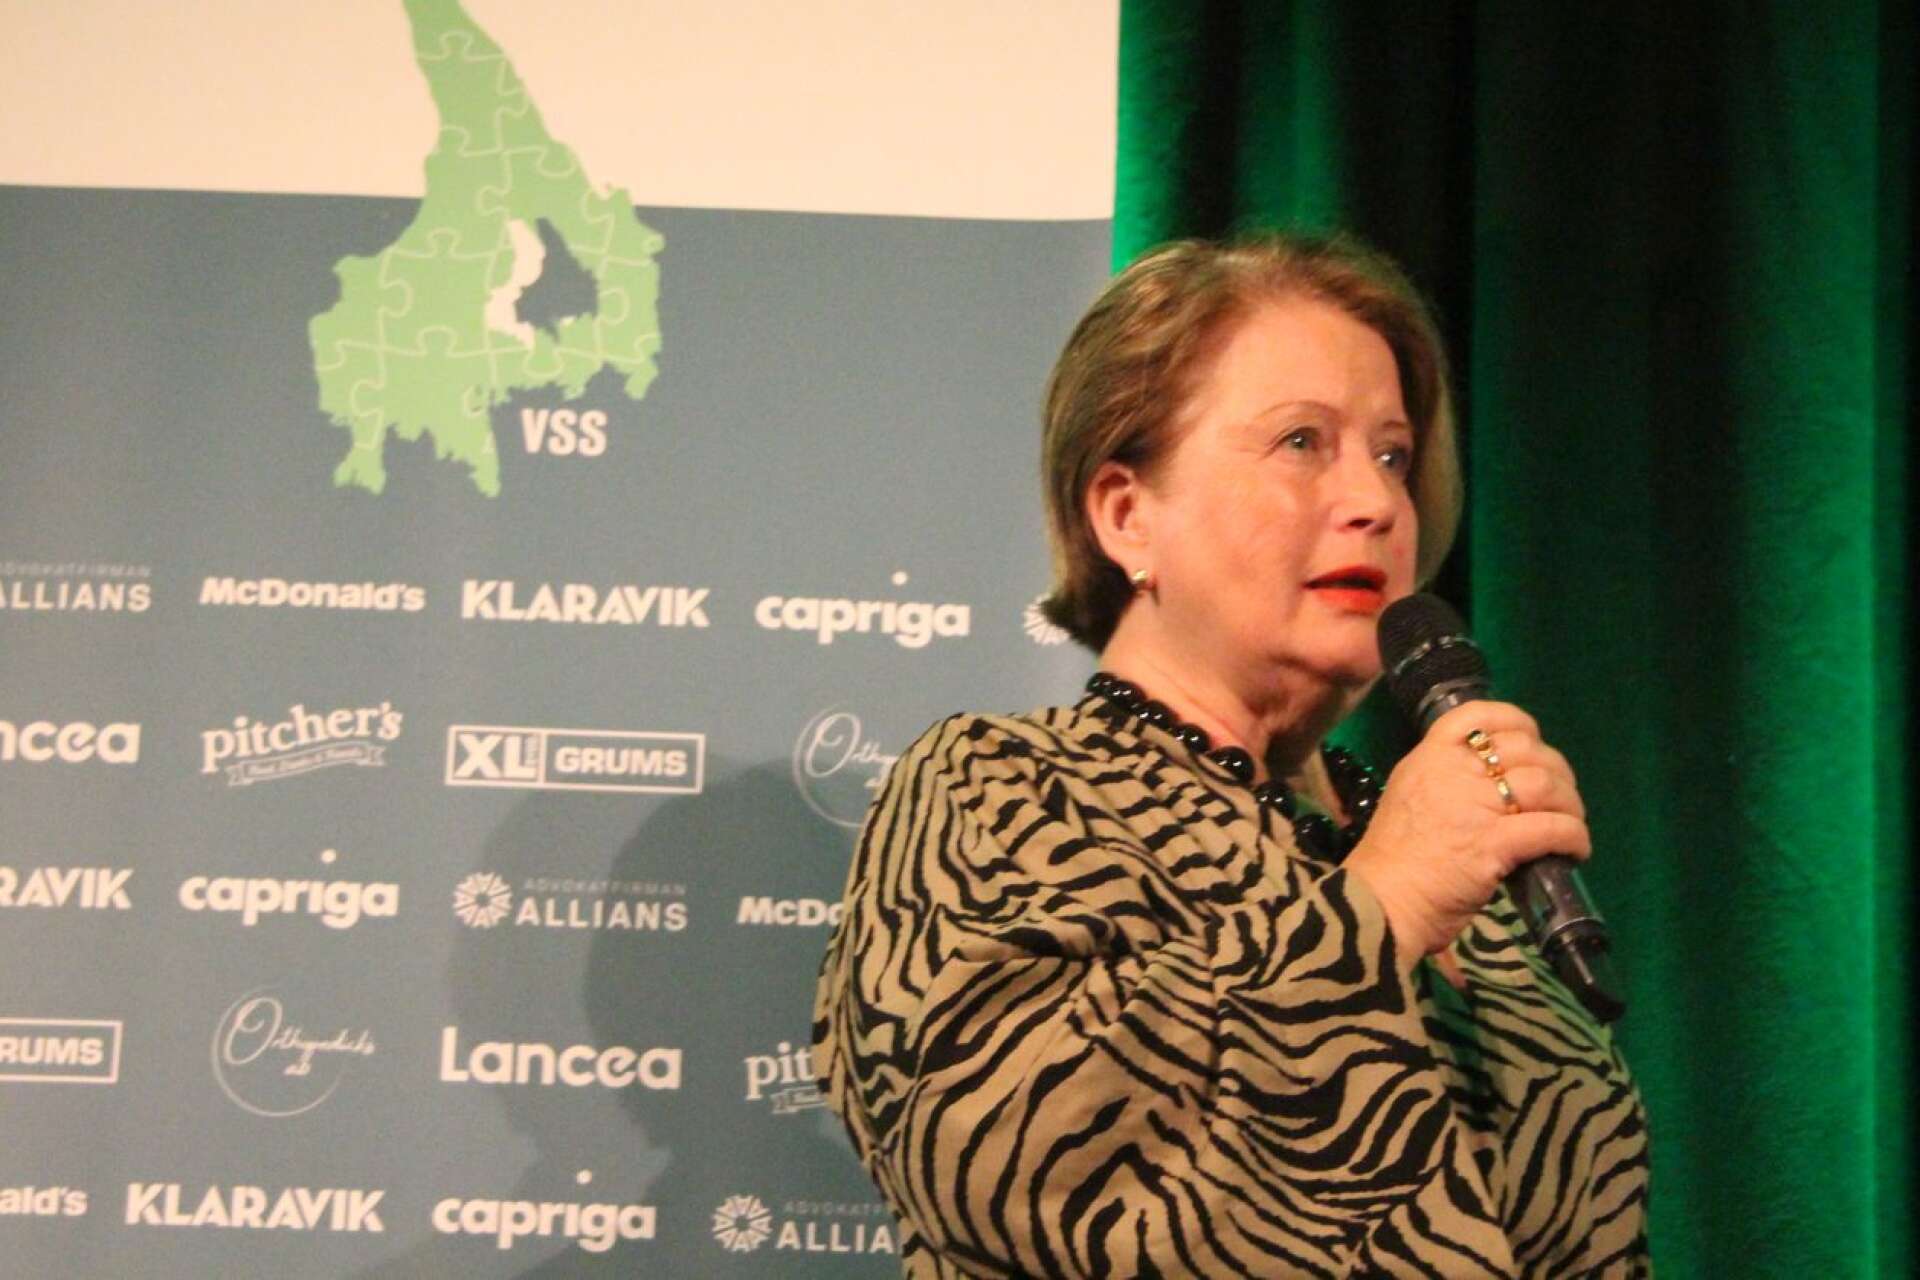 Ulla-Britt Wahlström meddelade att det ska startas en stiftelse i Kenneth Wahlströms namn. Den stora näringslivsprofilen Kenneth Wahlström gick bort 2021, 74 år gammal.